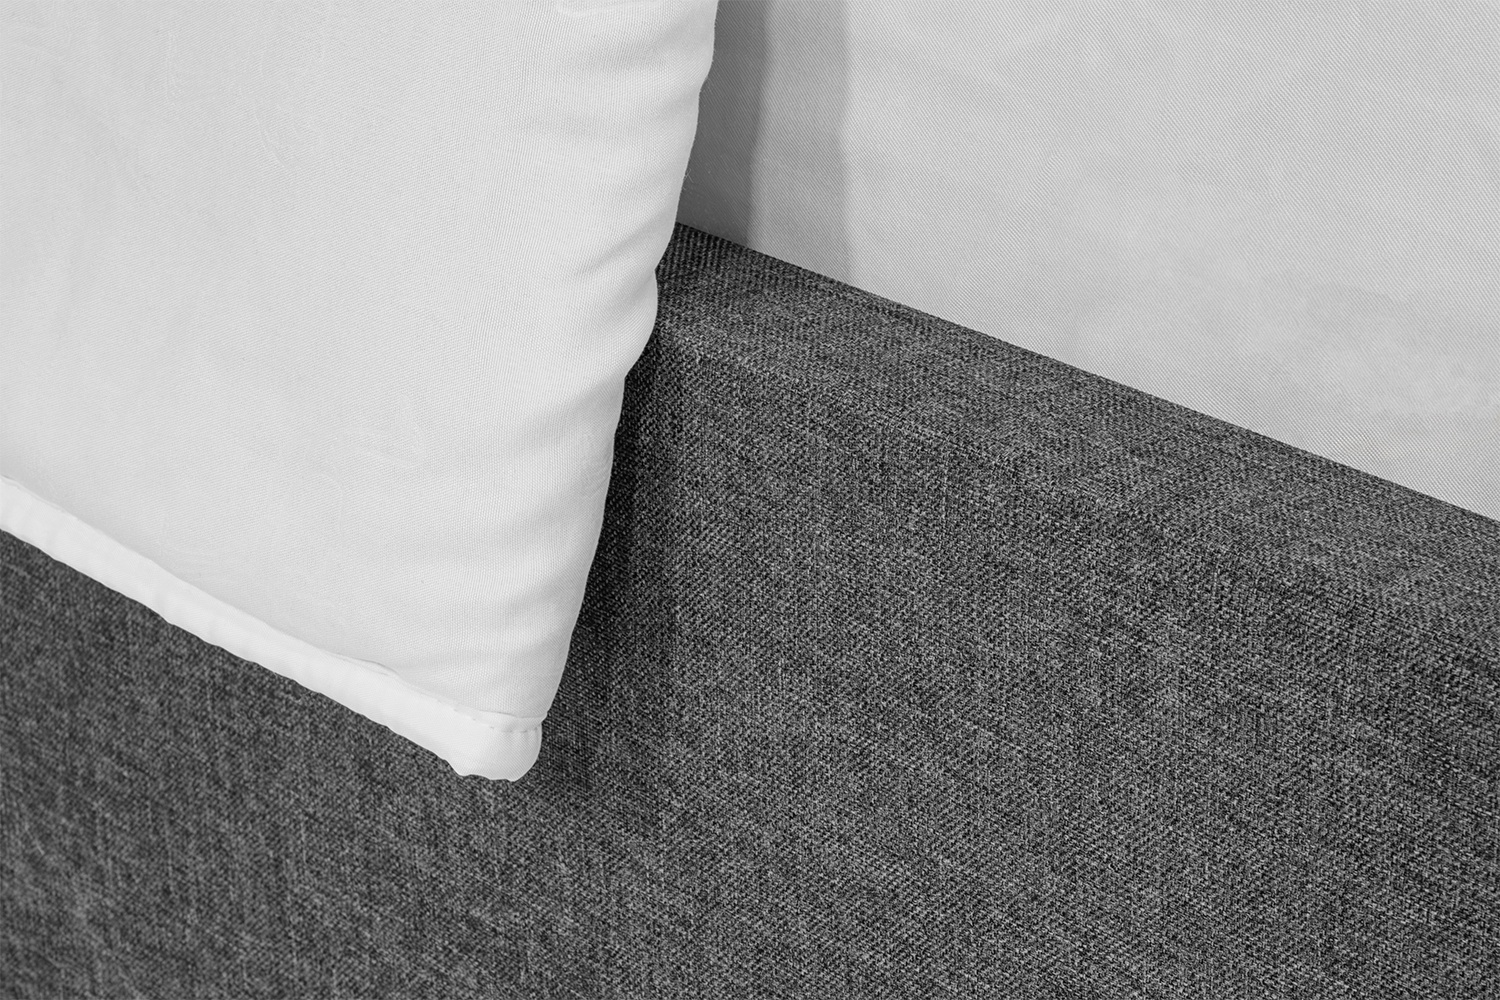 Кровать Лилия 140х200 (Серый, рогожка, без подъемного механизма) IMI lllrg140x200sb фото